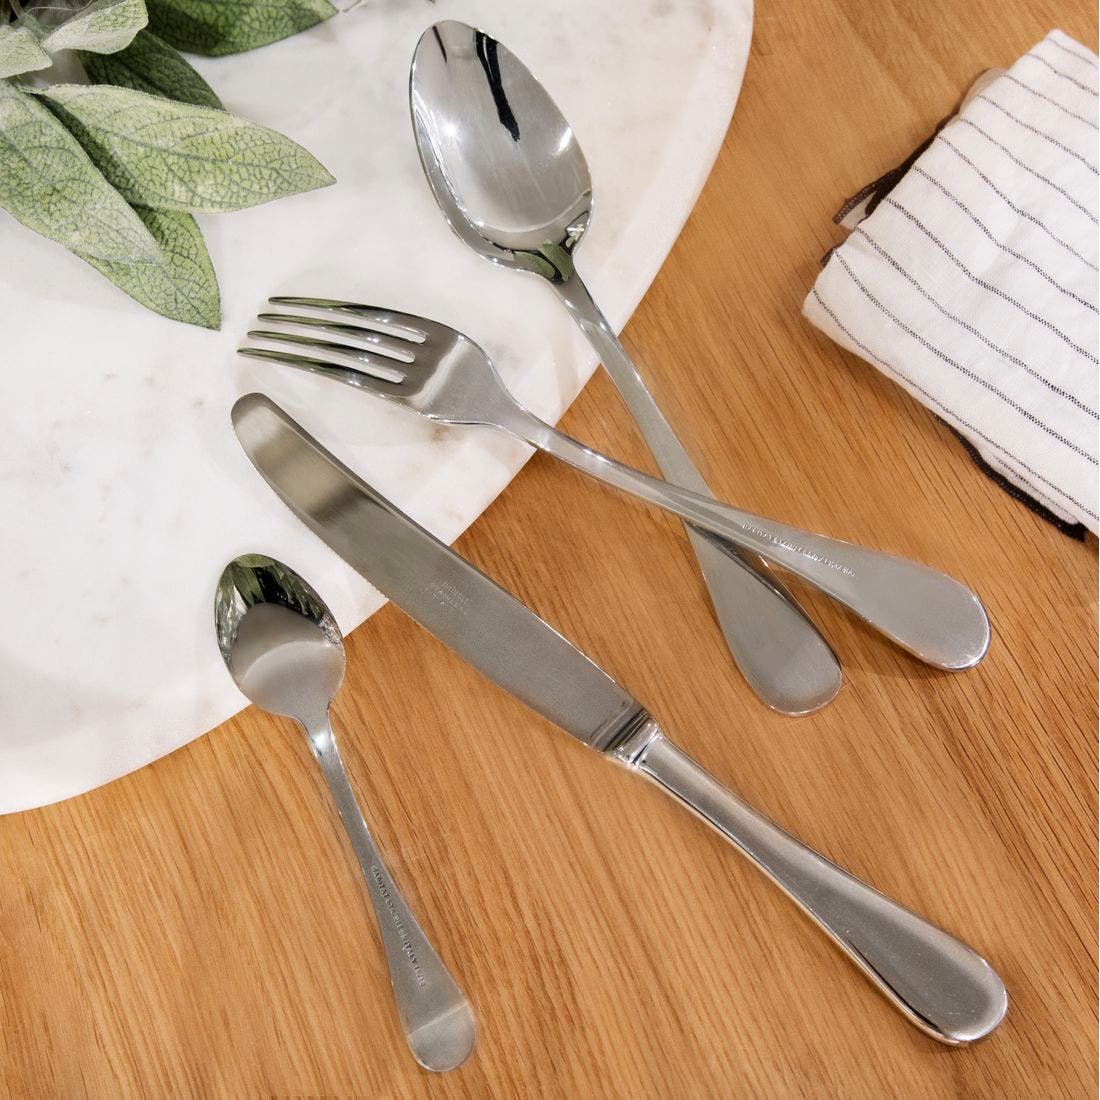 25022157-brighton-kitchen-tableware-cutlery-set-31